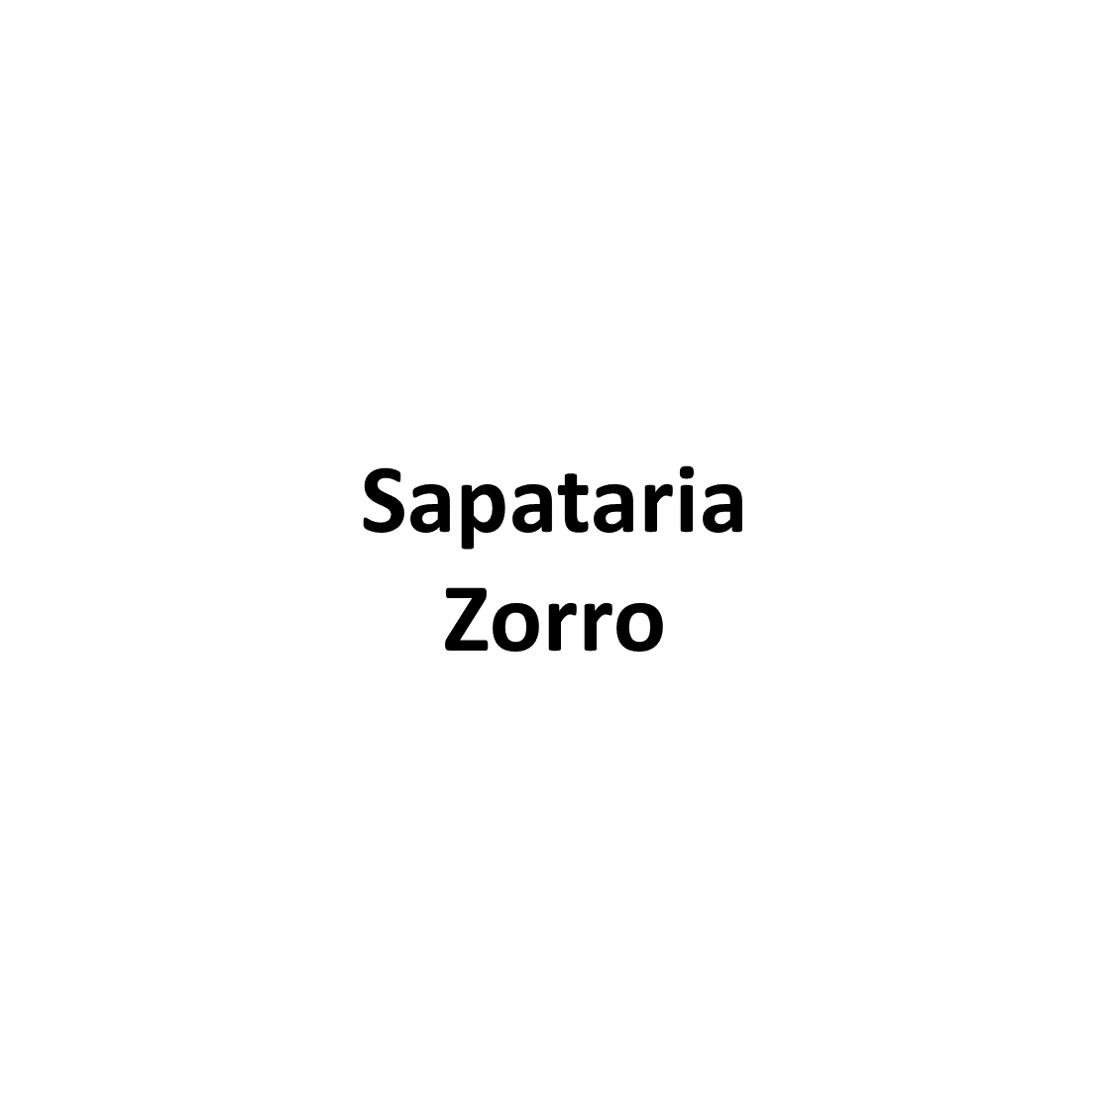 Sapataria Zorro